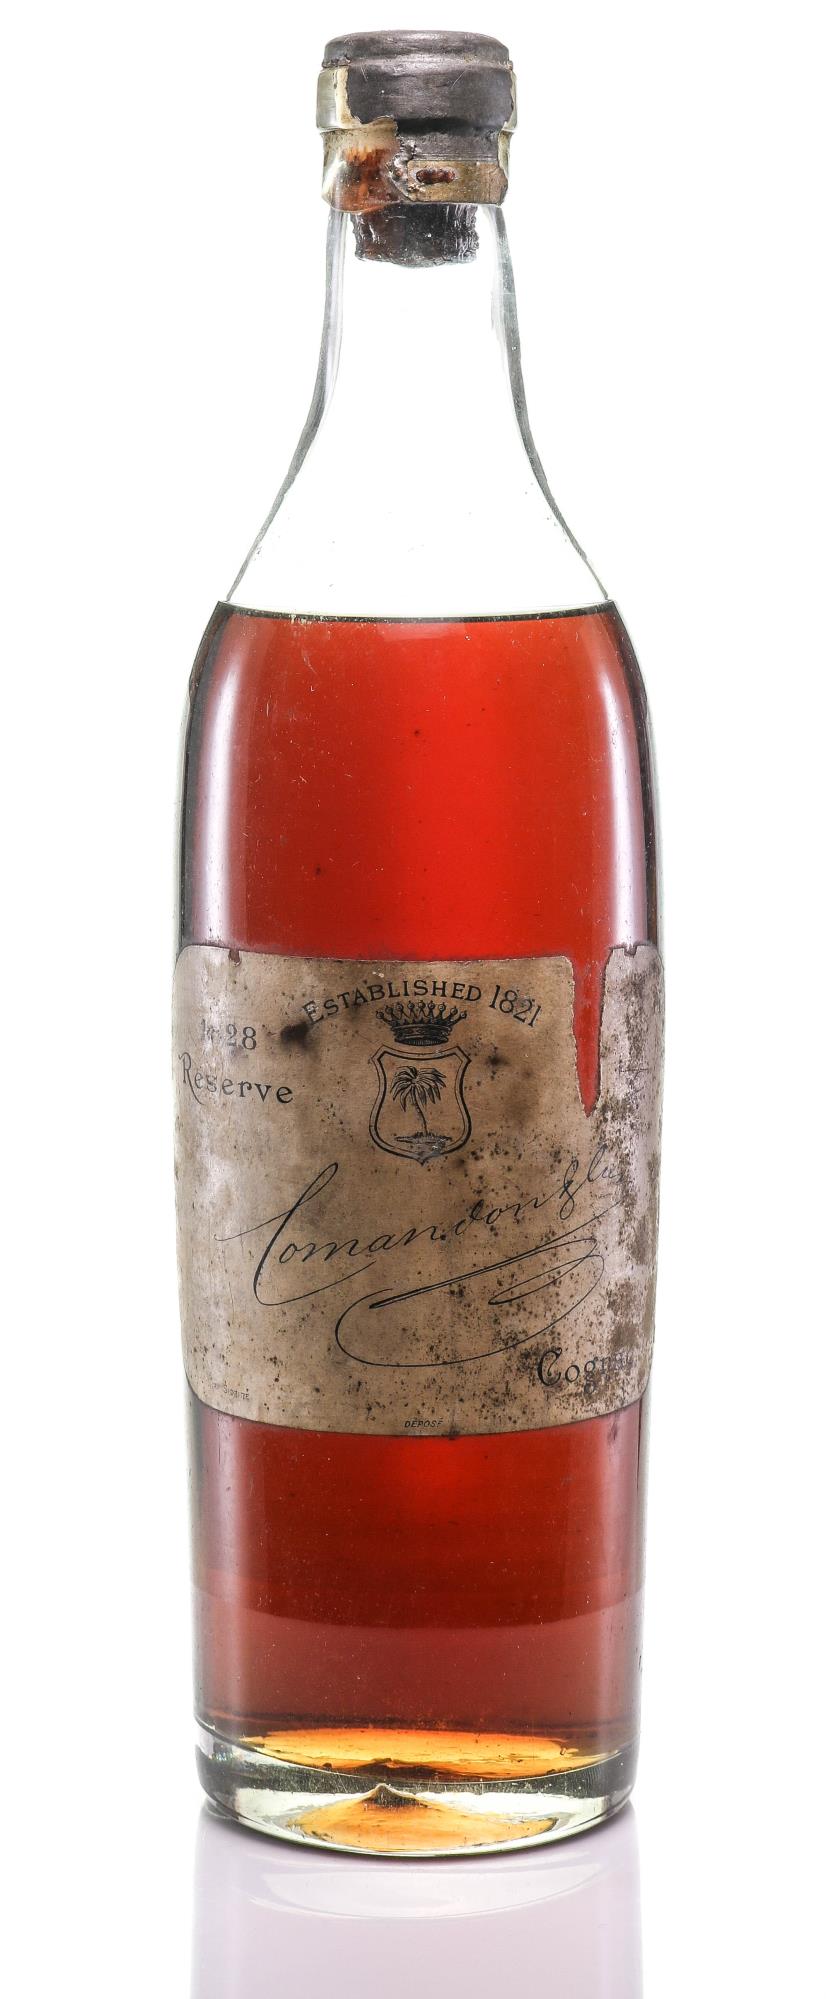 Comandon 1828 Reserve Cognac (Vintage 1828) - Rue Pinard